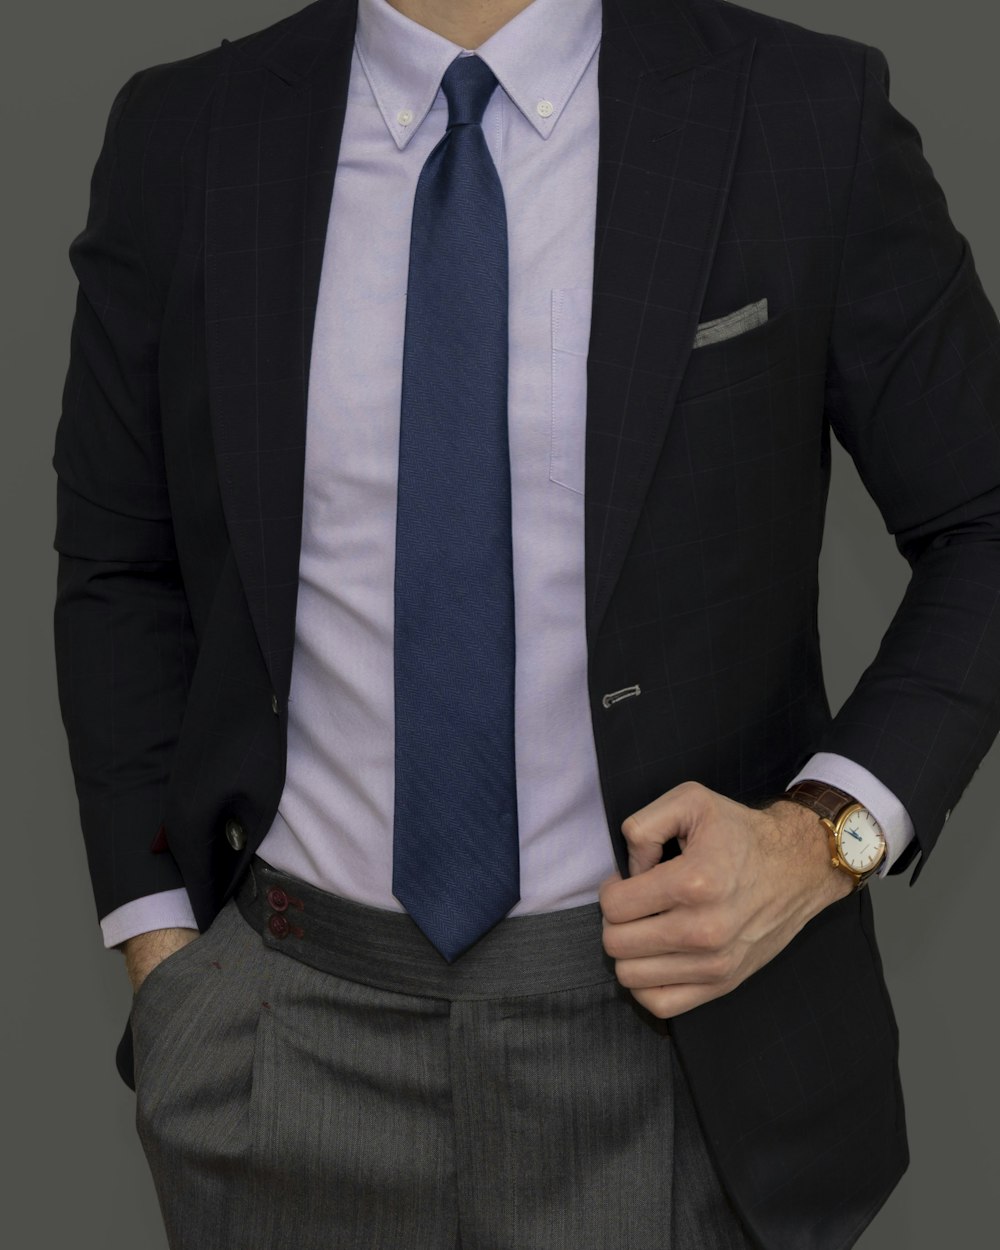 Mann in schwarzer Anzugjacke und blauer Krawatte